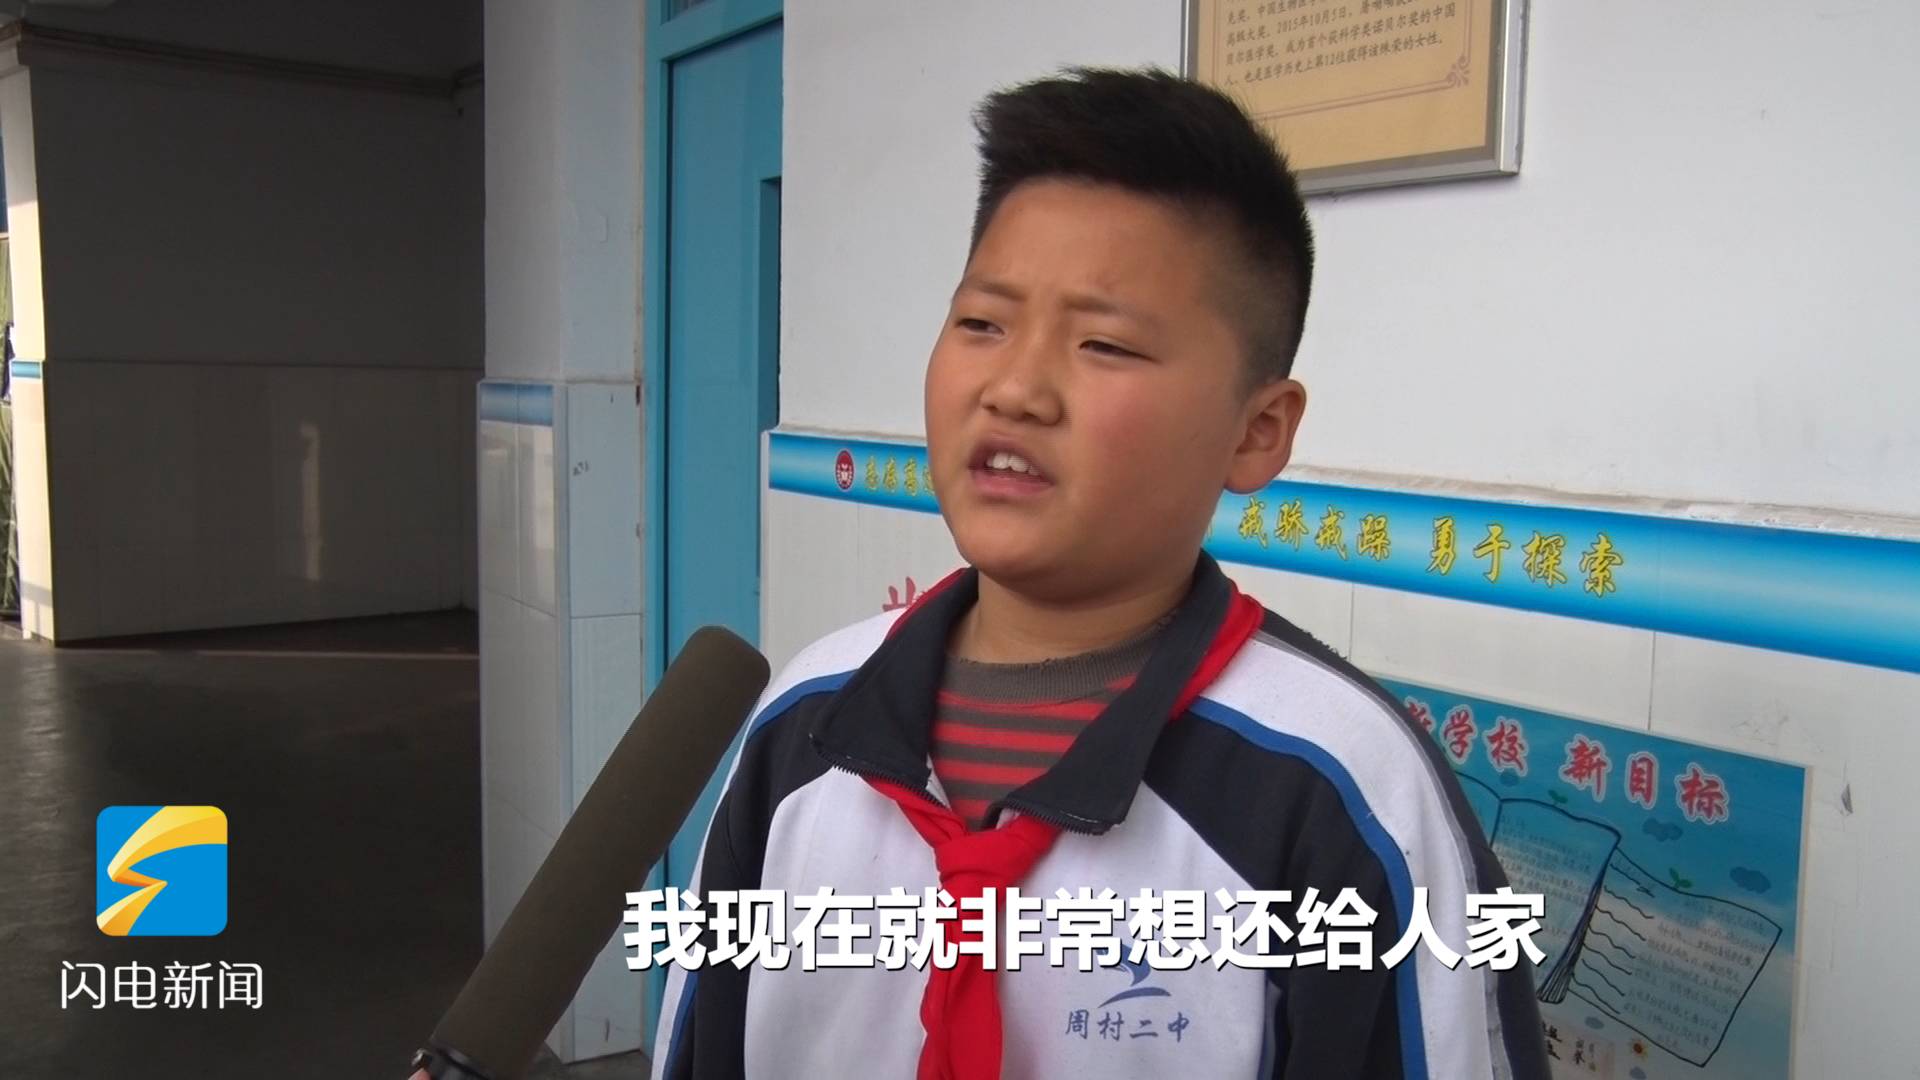 102秒丨淄博一小学生帮老人垫付公交车费被还100元 他急哭了